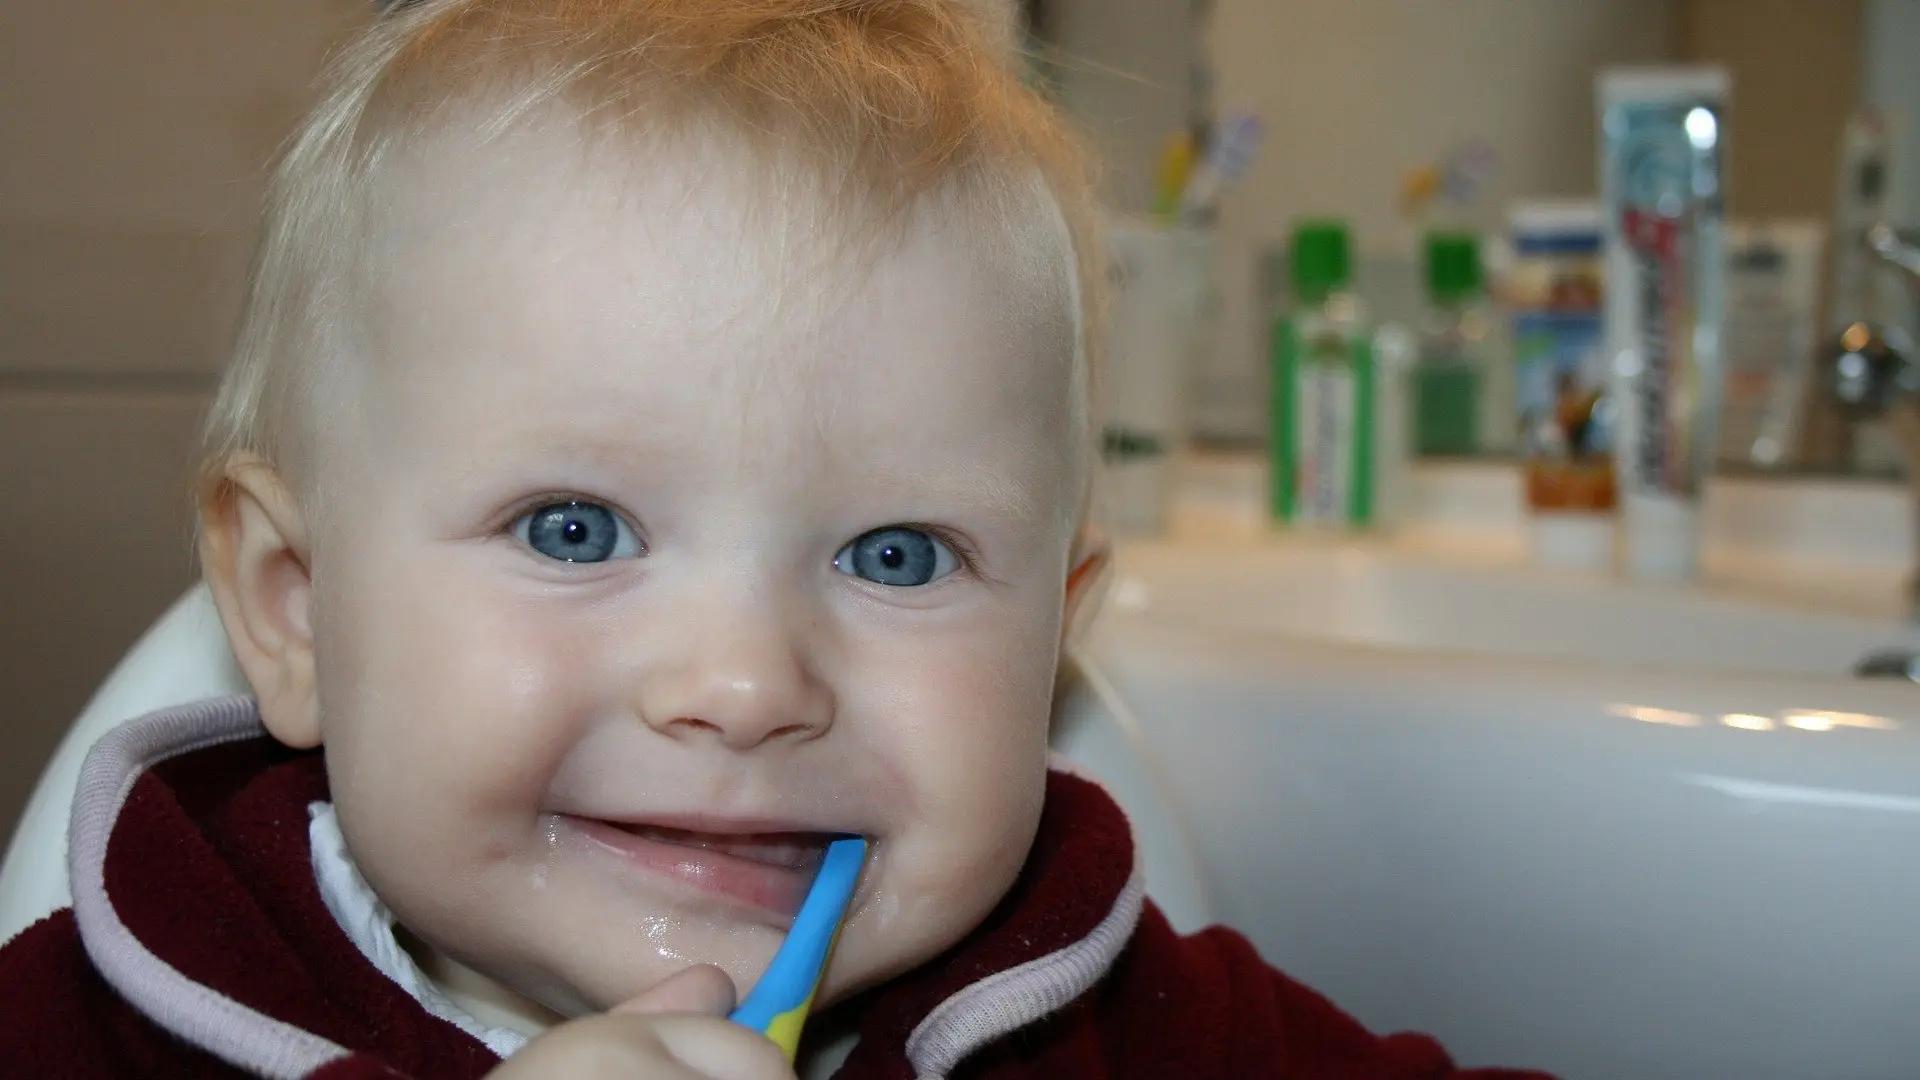 pasta de dientes para niños - Cuando los niños pueden usar pasta dental de adultos